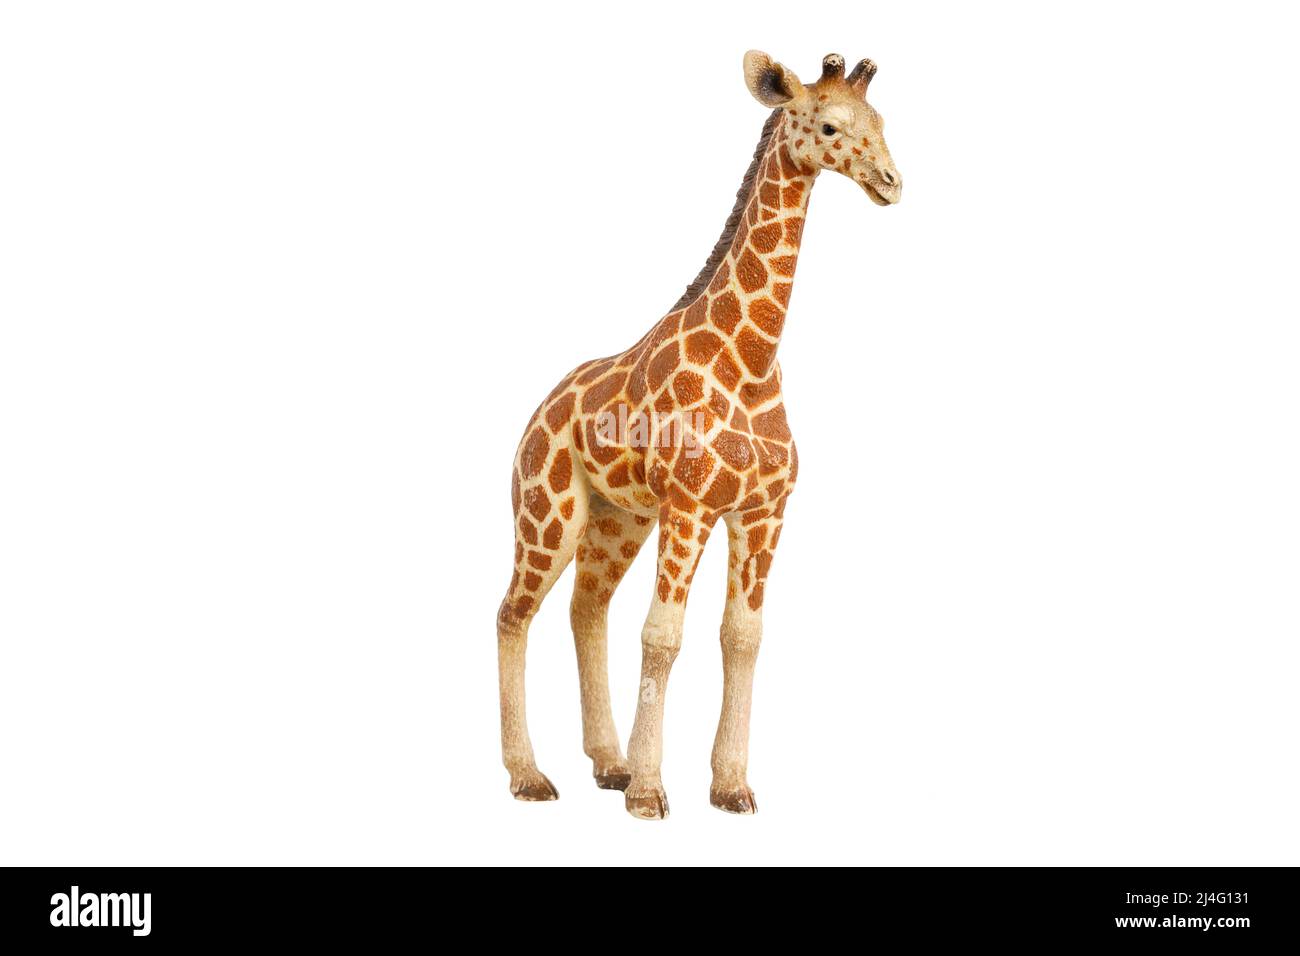 figurine jouet girafe isolée sur fond blanc. Photo de haute qualité Banque D'Images